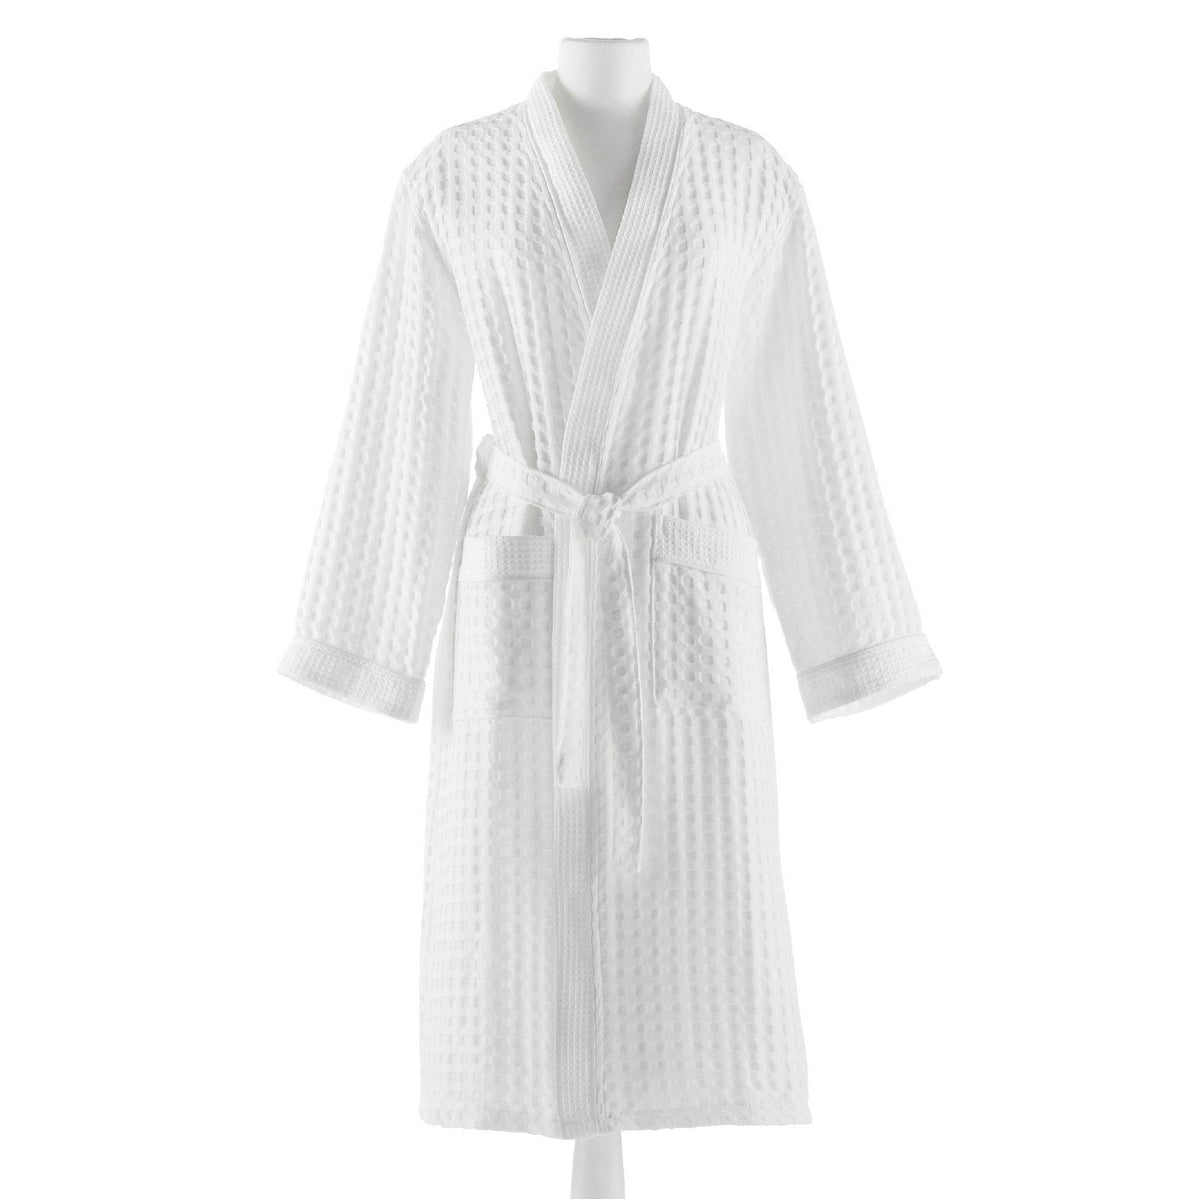 white robe dress